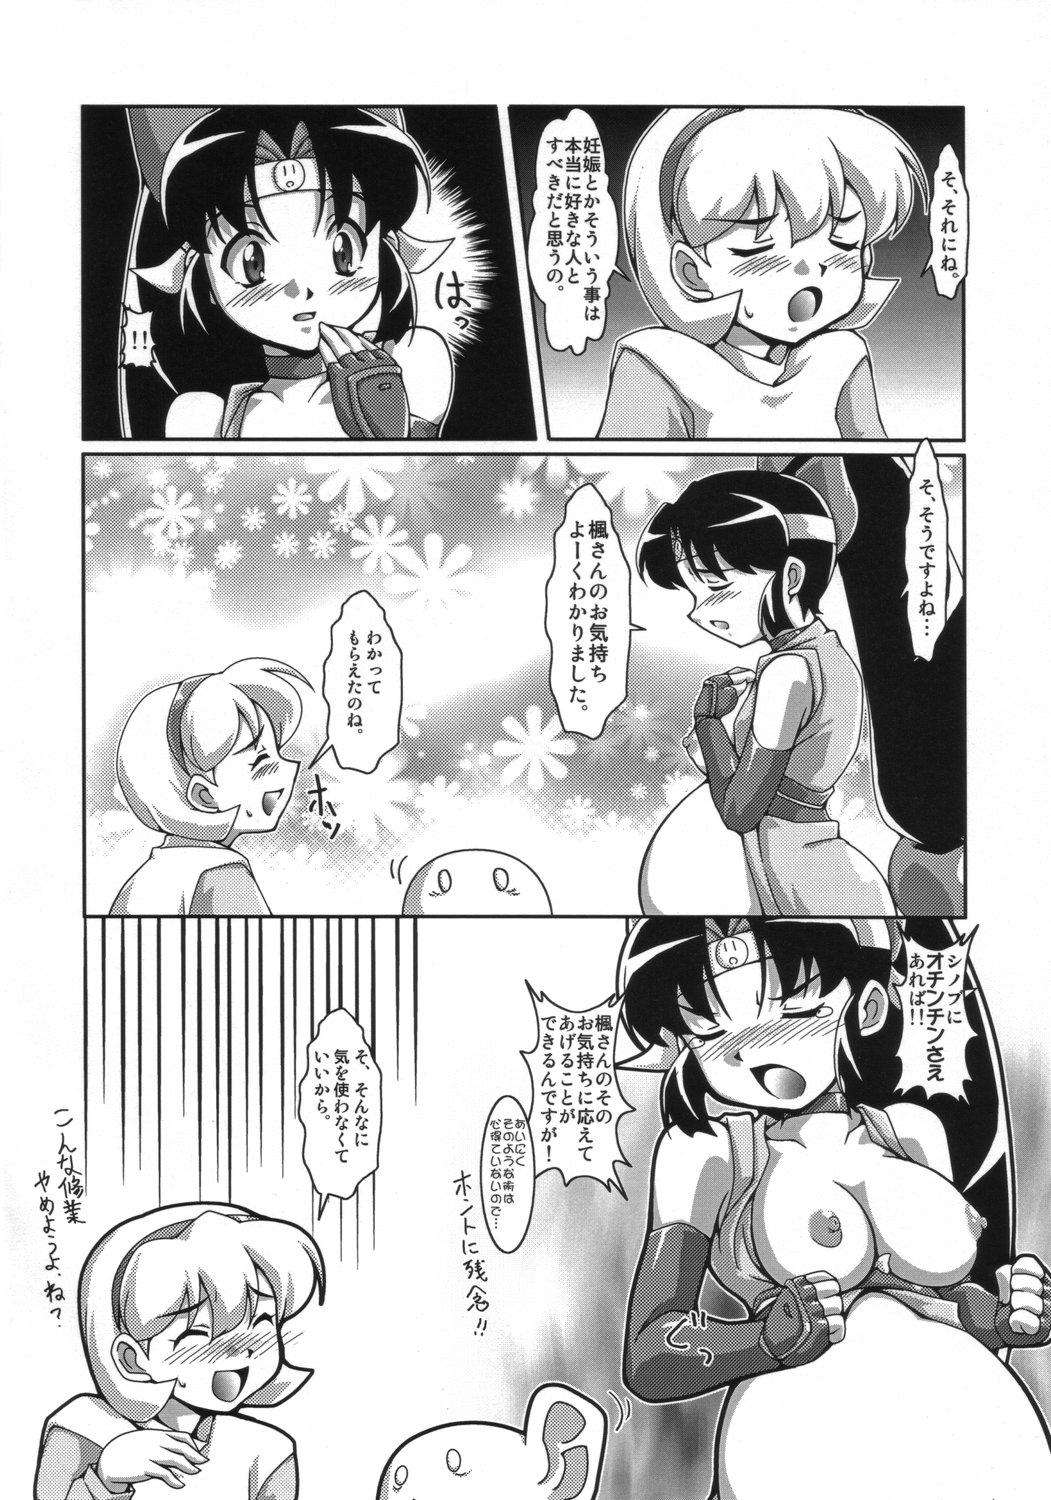 Sapphicerotica Ninshin Shinobu Densetsu - 2x2 shinobuden Women Sucking Dicks - Page 11